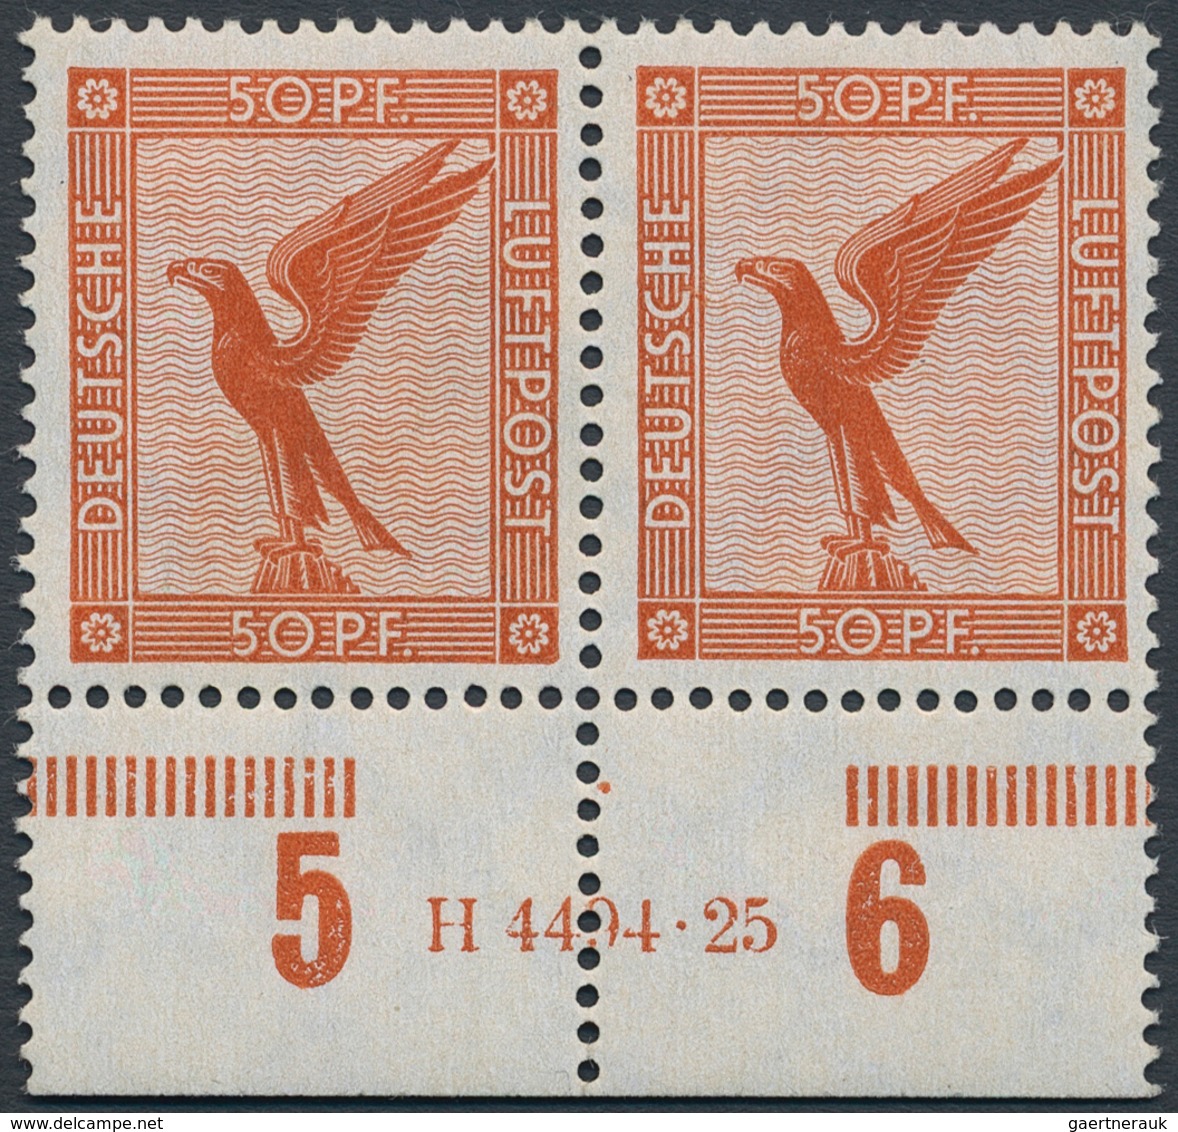 Deutsches Reich - Weimar: 1926, Flugpost 50 Pfg, Waagerechtes Postfrisches Paar Mit HAN "H 4494.25", - Ungebraucht